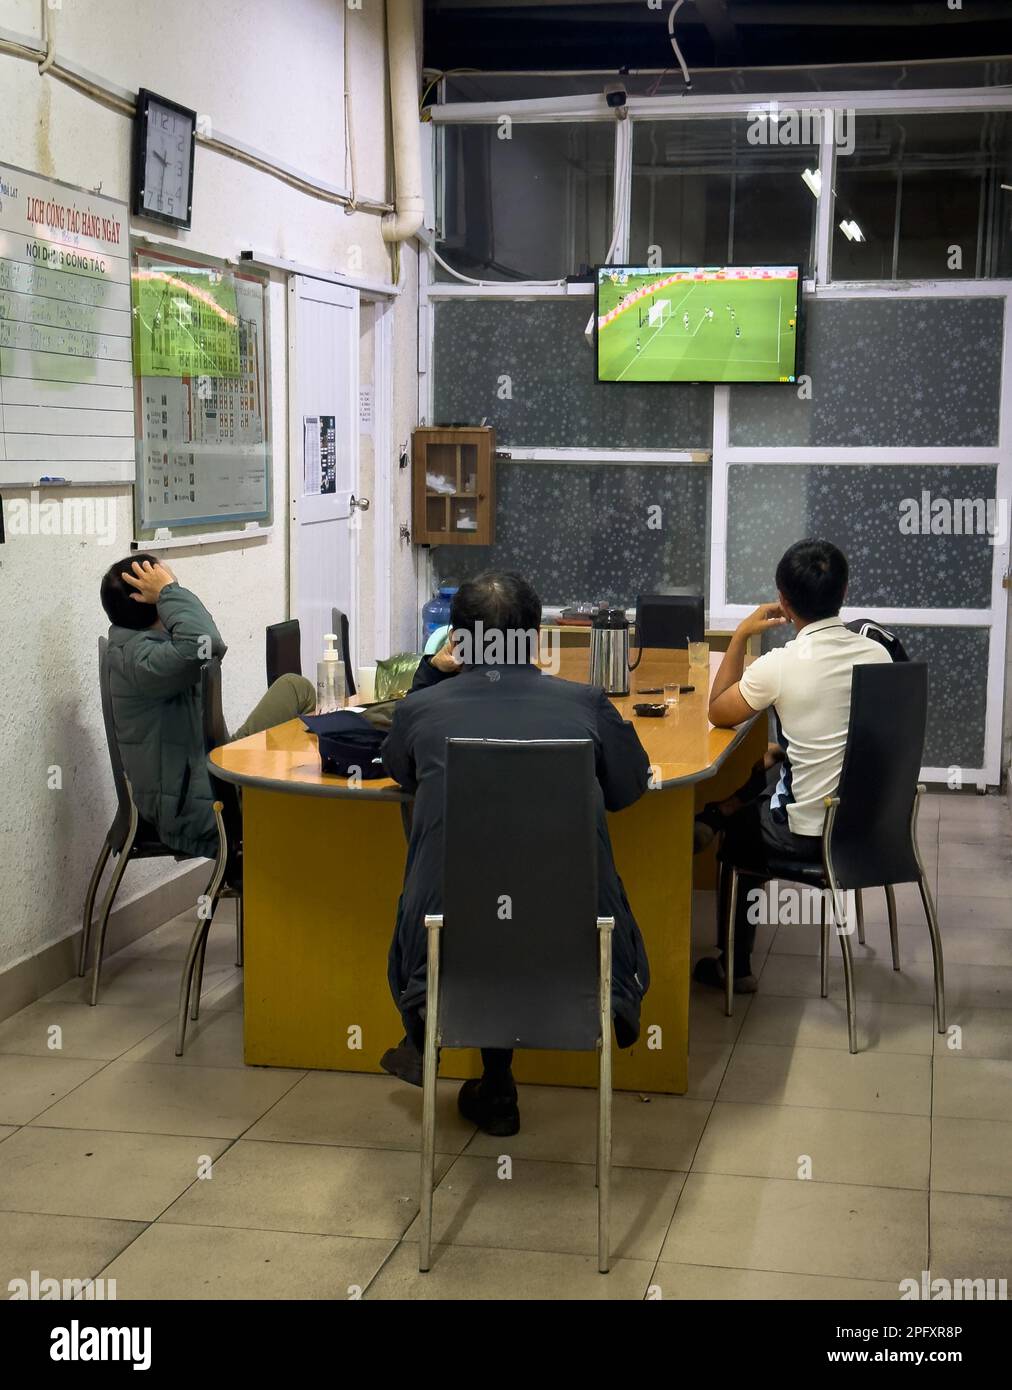 Trois gardes de sécurité du marché de Dalat au Vietnam s'assoient pour assister à un match de football à la télévision qui aura lieu lors de la coupe du monde de la FIFA 2022. Banque D'Images